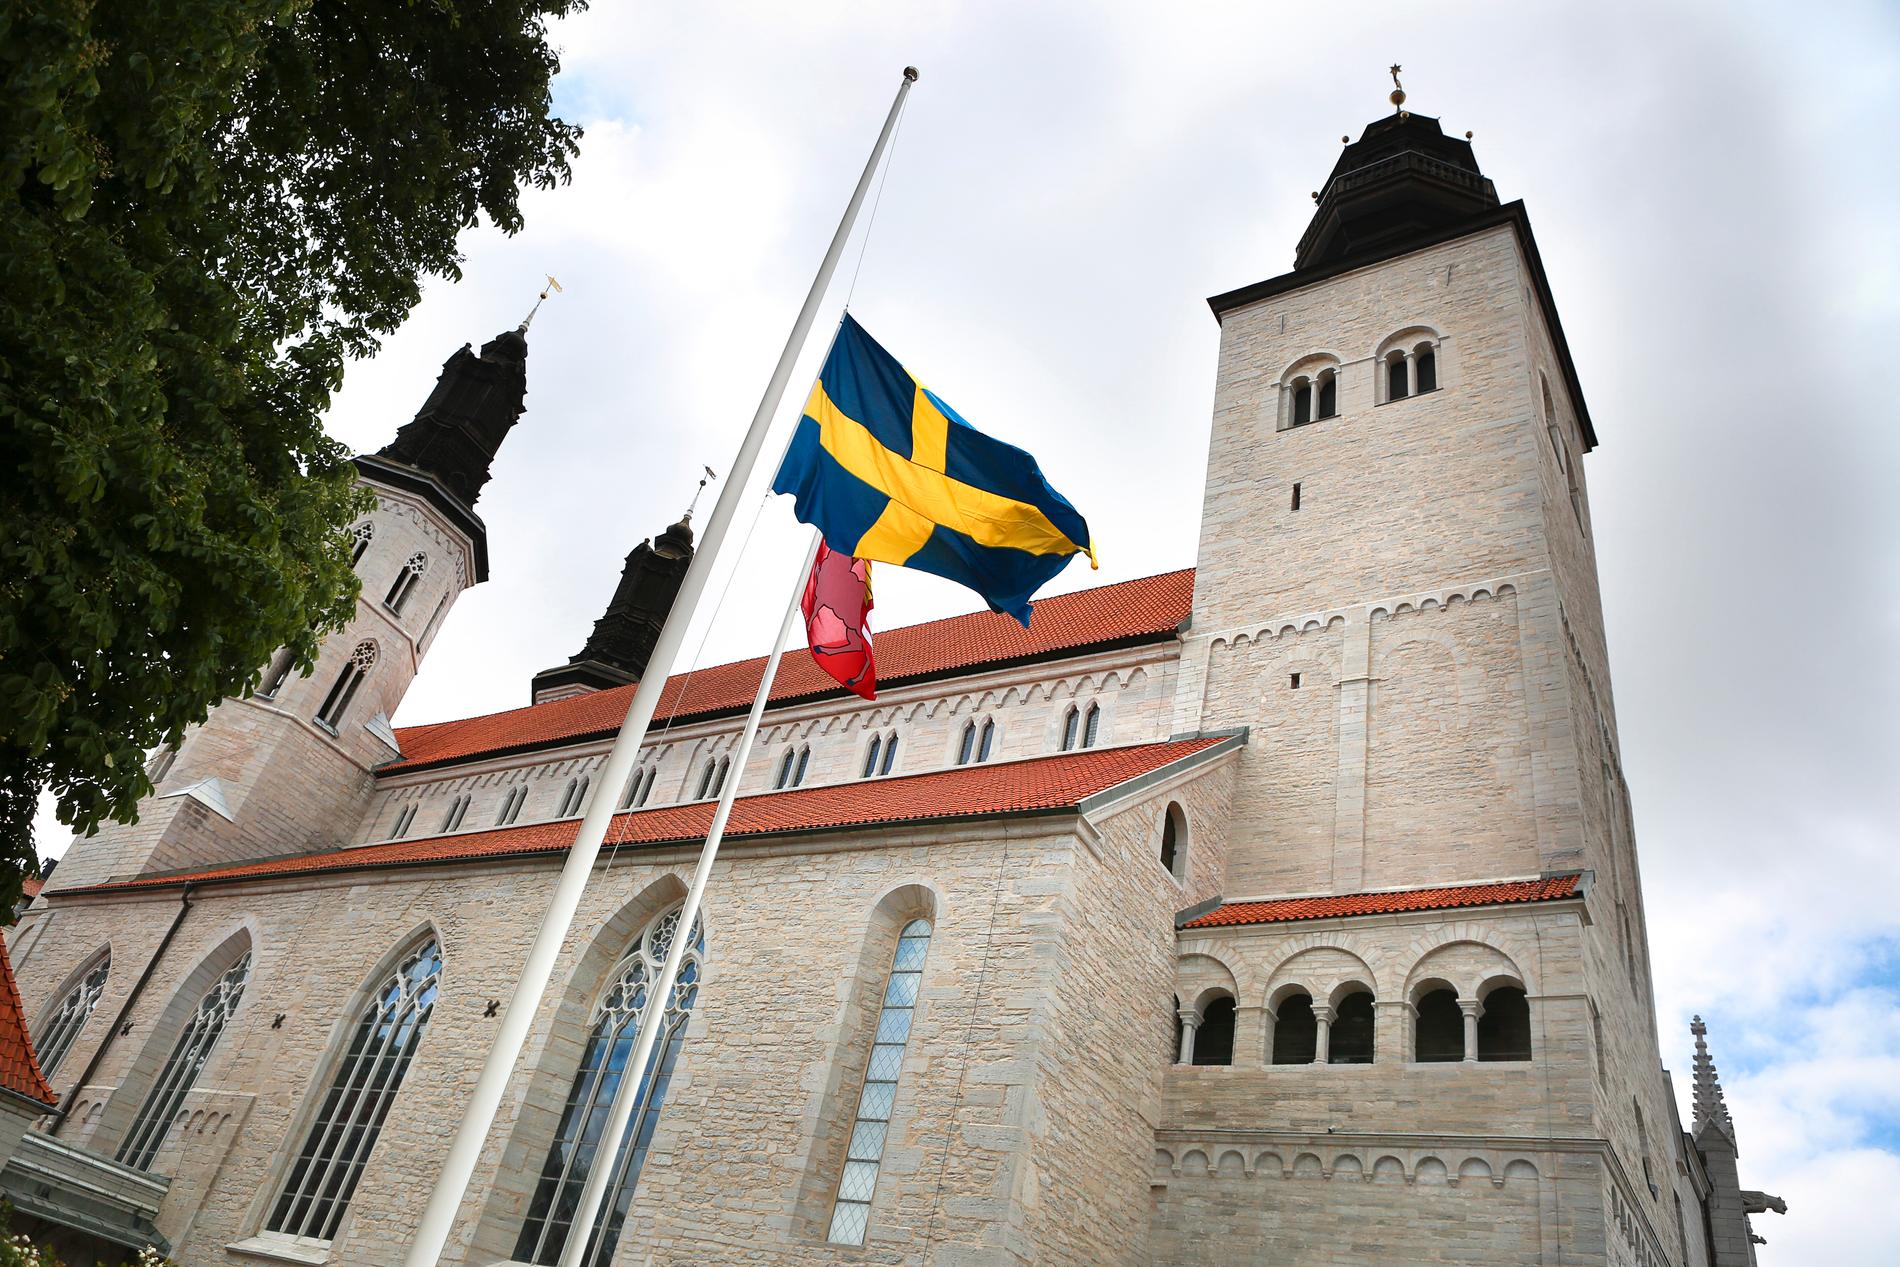 Flaggan på halv stång. Det tragiska dödsfallet i Visby 2016 har lett till hårdare regler för studentflaken.